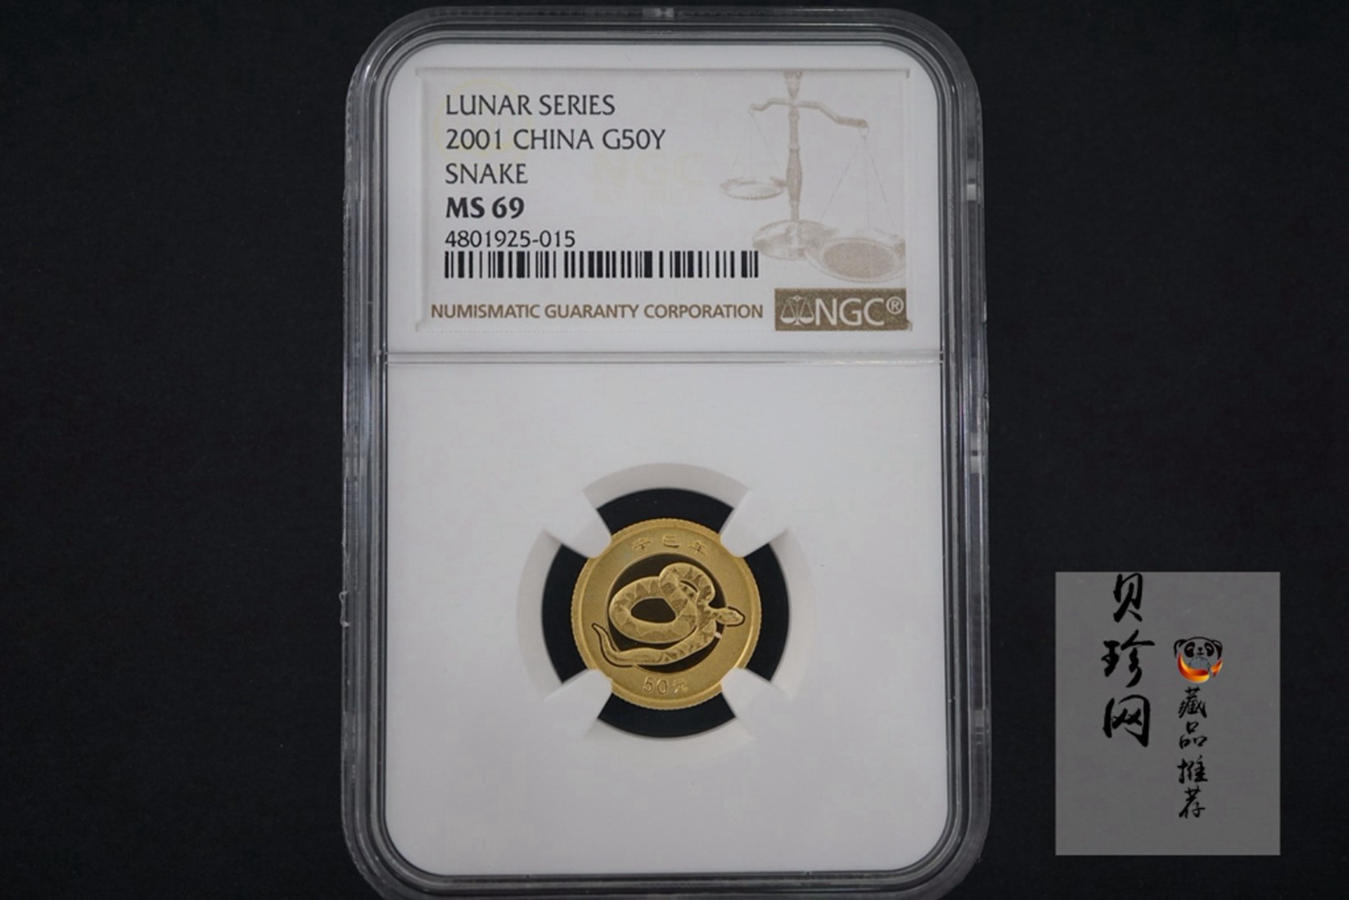 【010206】2001中国辛巳（蛇）年金银纪念币 -盘蛇图1/10盎司普制金币